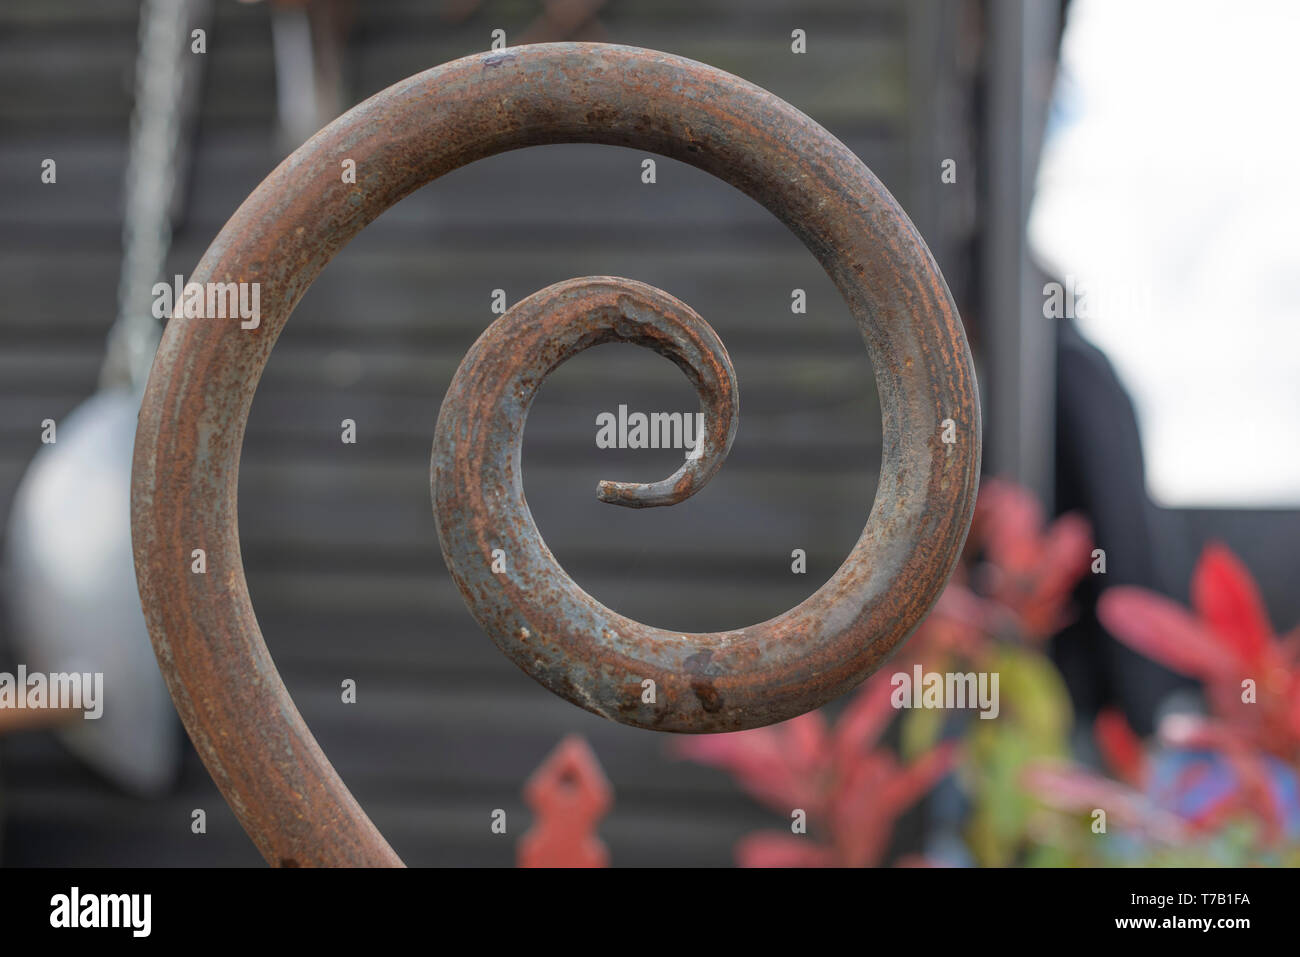 El hierro forjado formando una elegante espiral Foto de stock